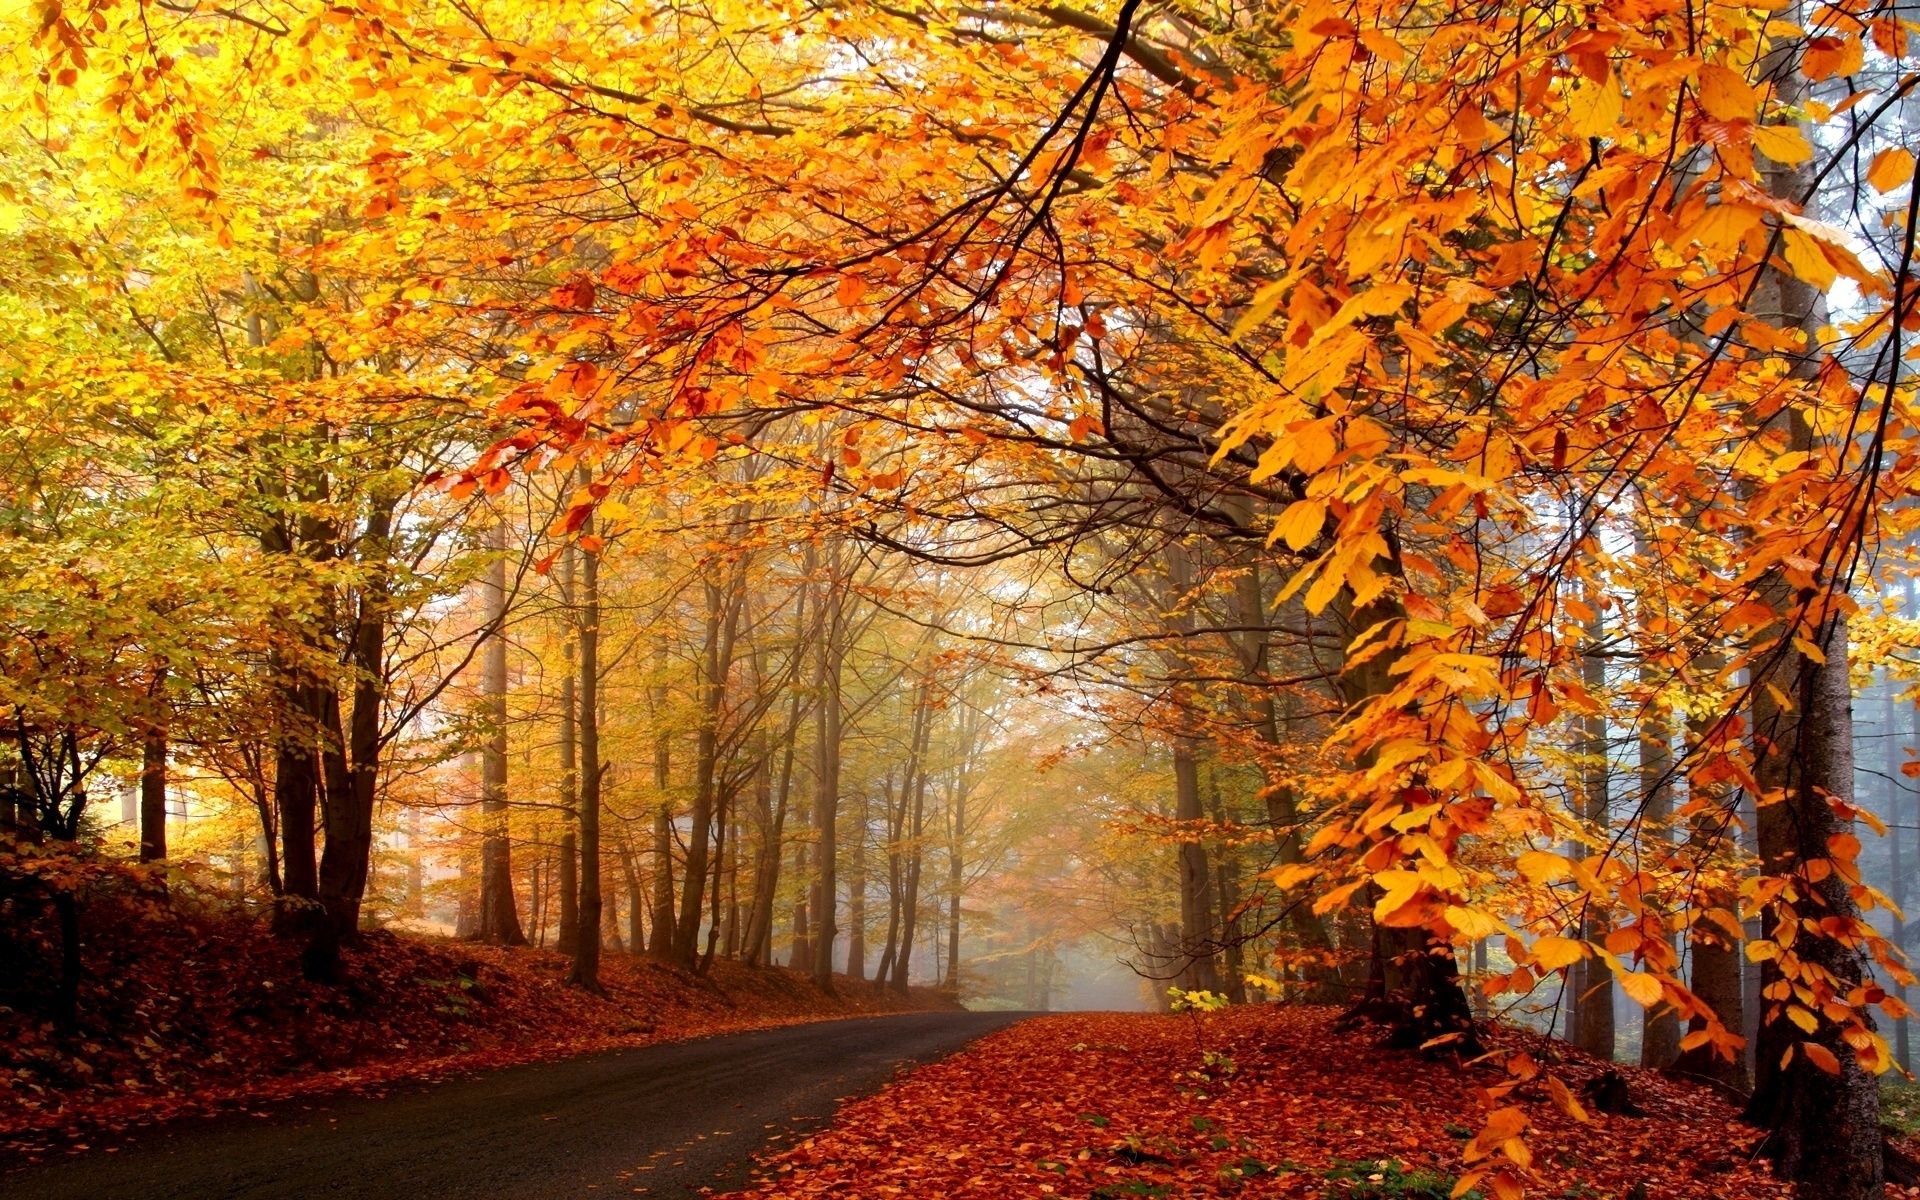 Automne Fonds d'écran 1920x1200 Id: 302331. Autumn landscape, Scenery wallpaper, Autumn scenery